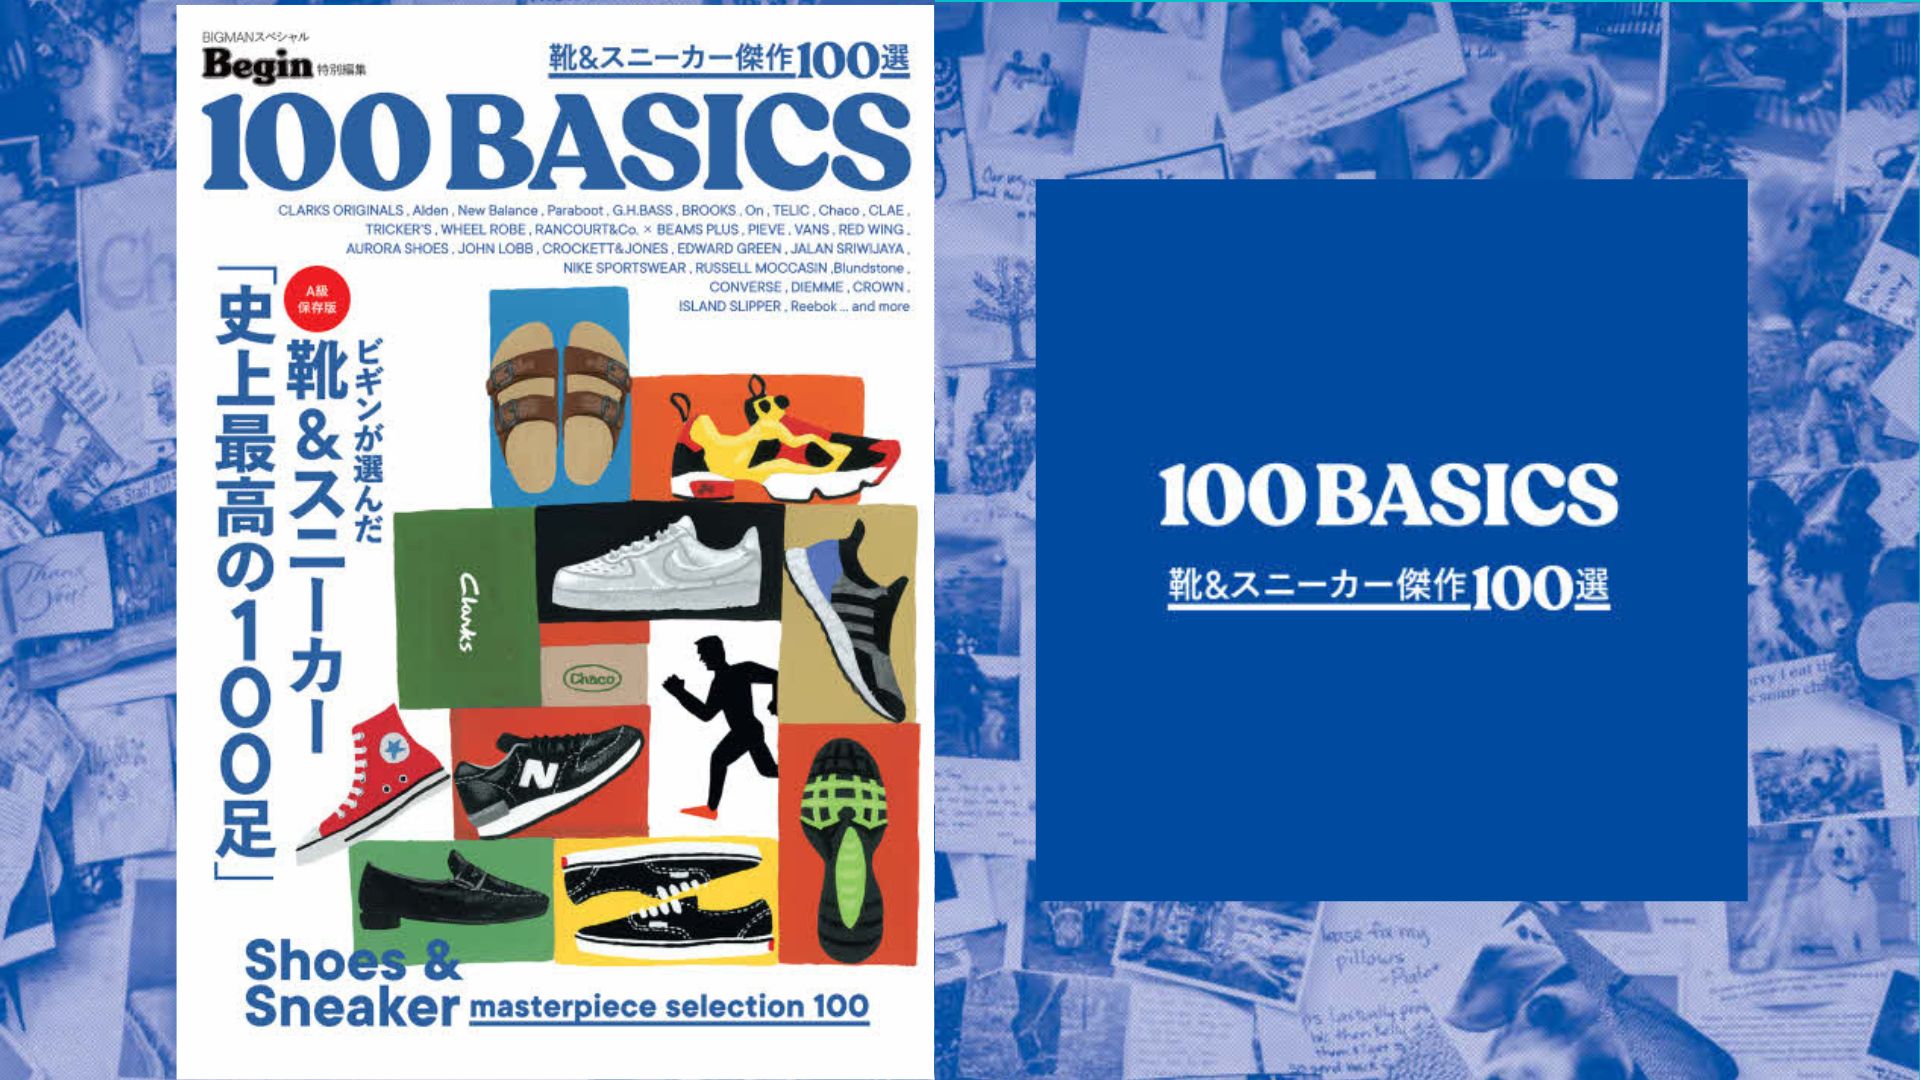 8月16日発売 Begin “靴＆スニーカー傑作100選 100BASICS”